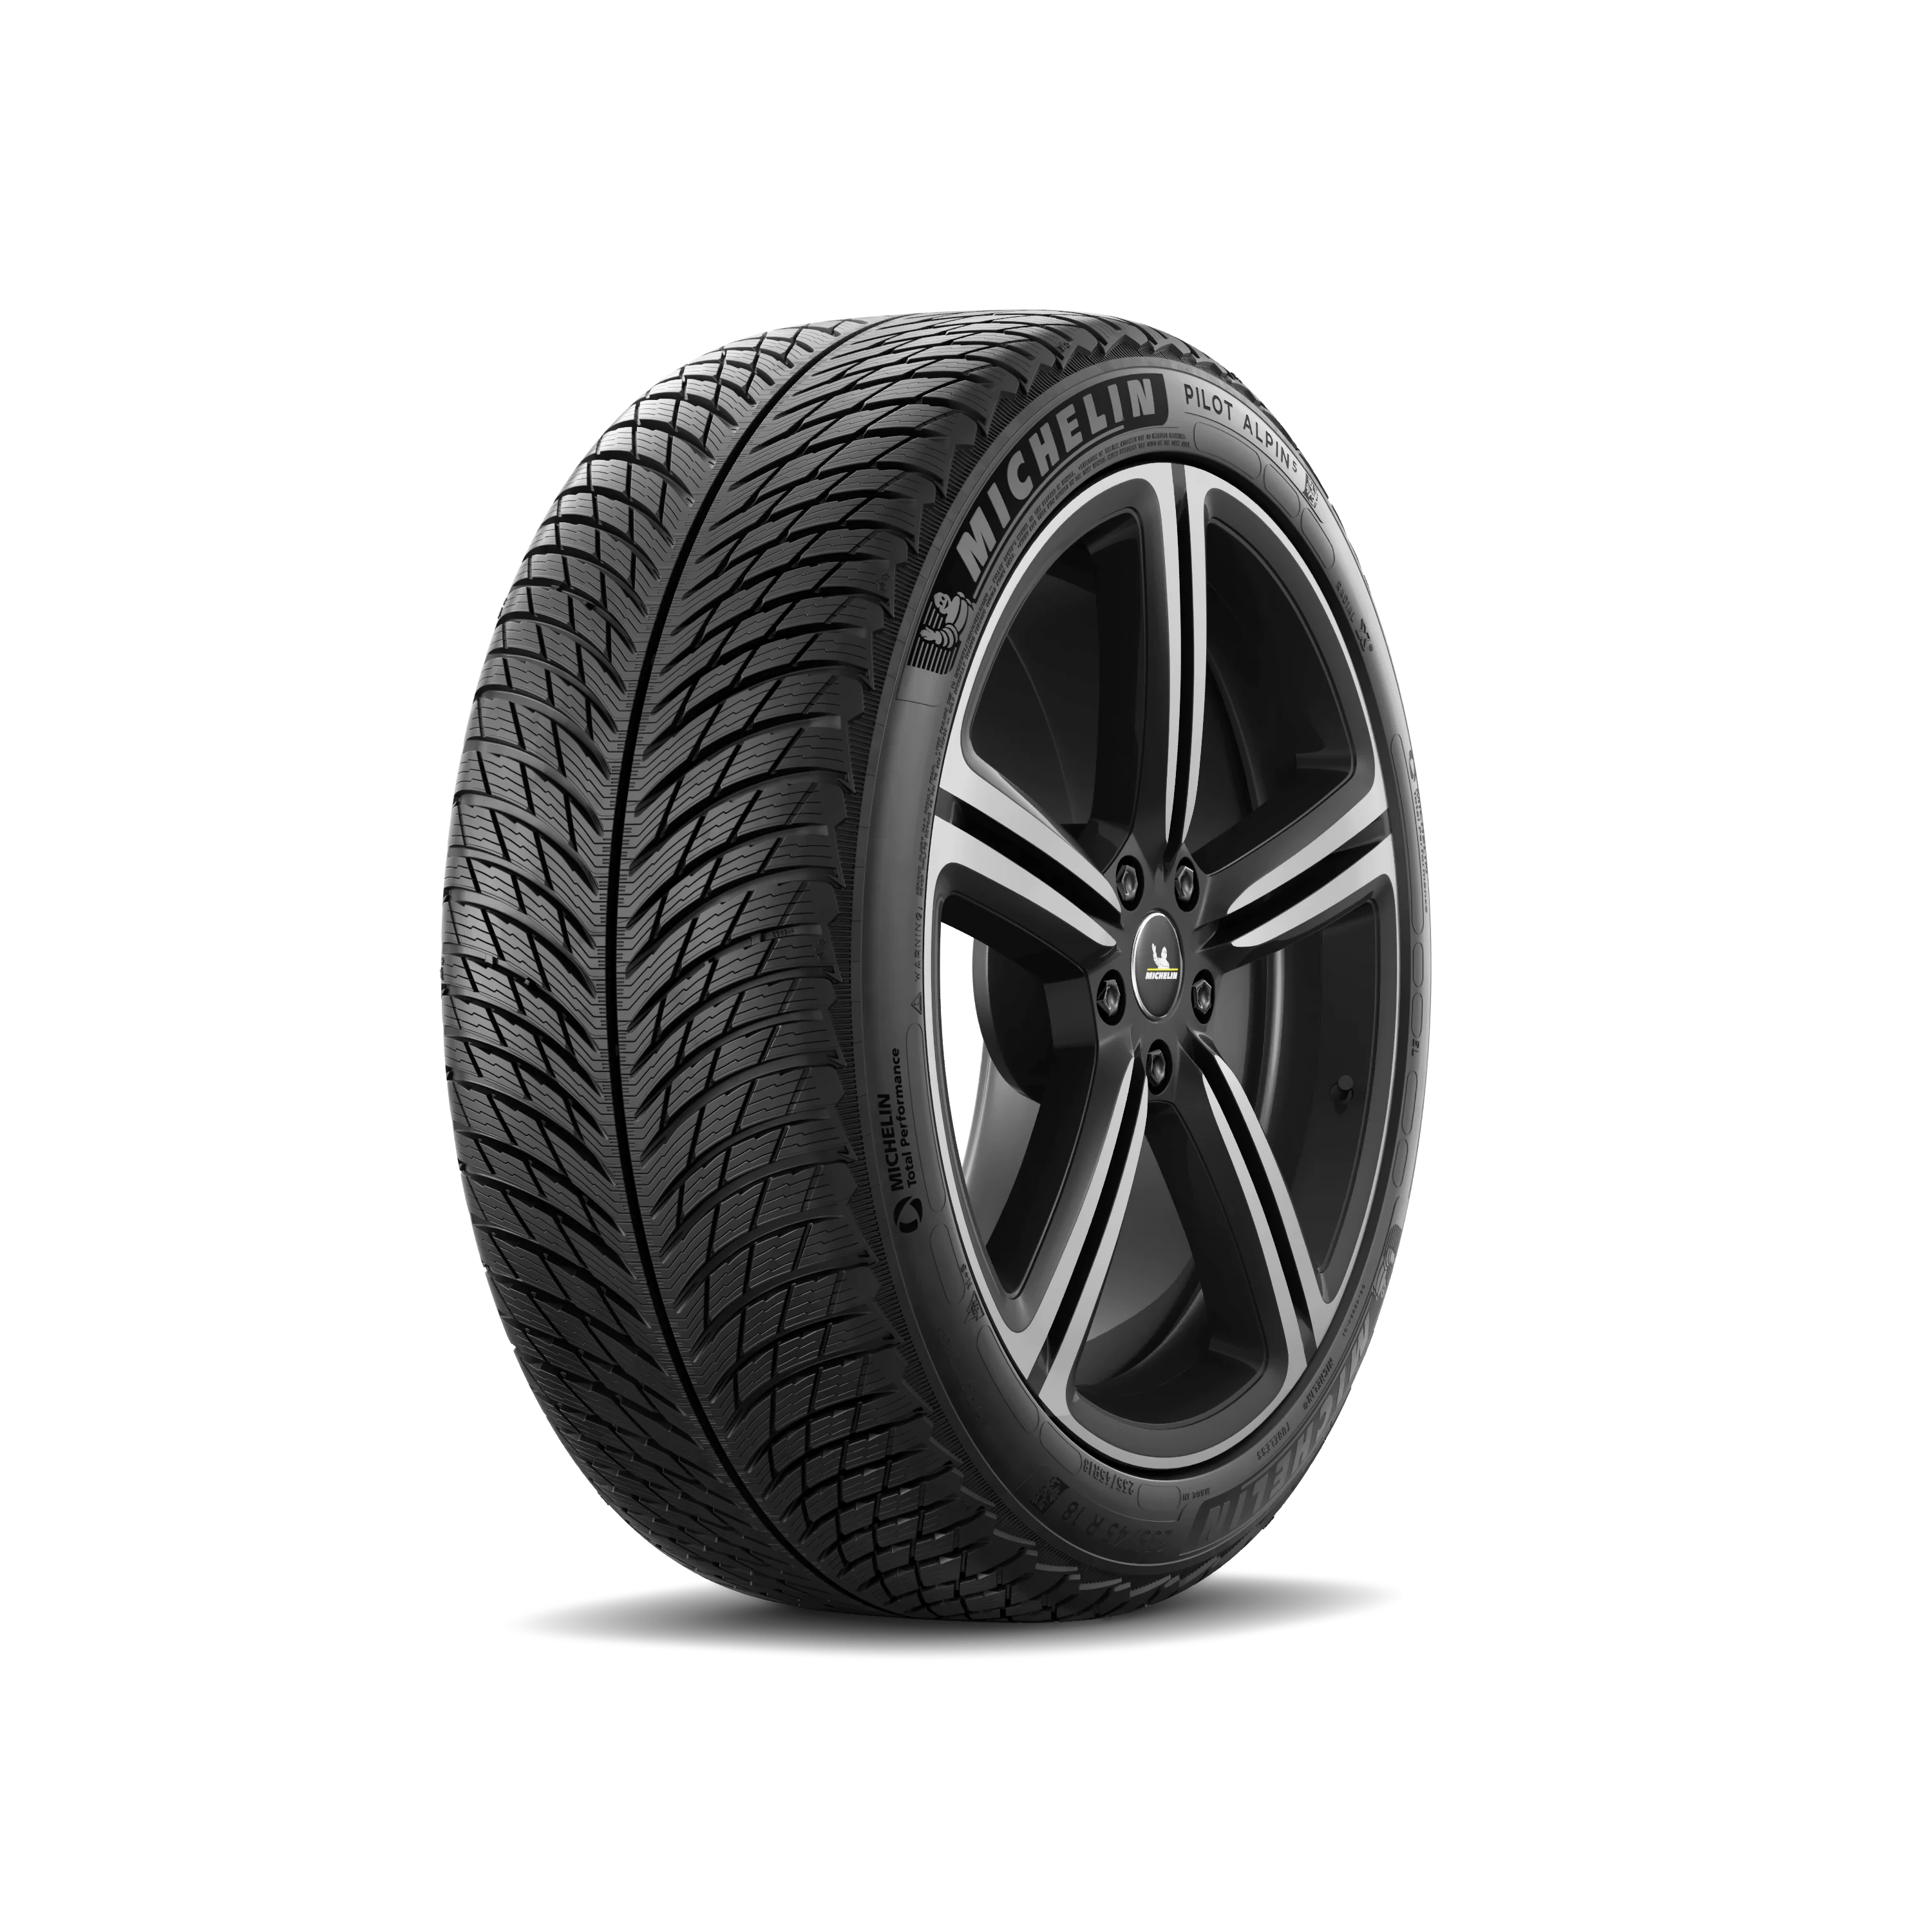 Michelin Michelin 255/45 R20 105V Pilotalpin5suv MO XL pneumatici nuovi Invernale 